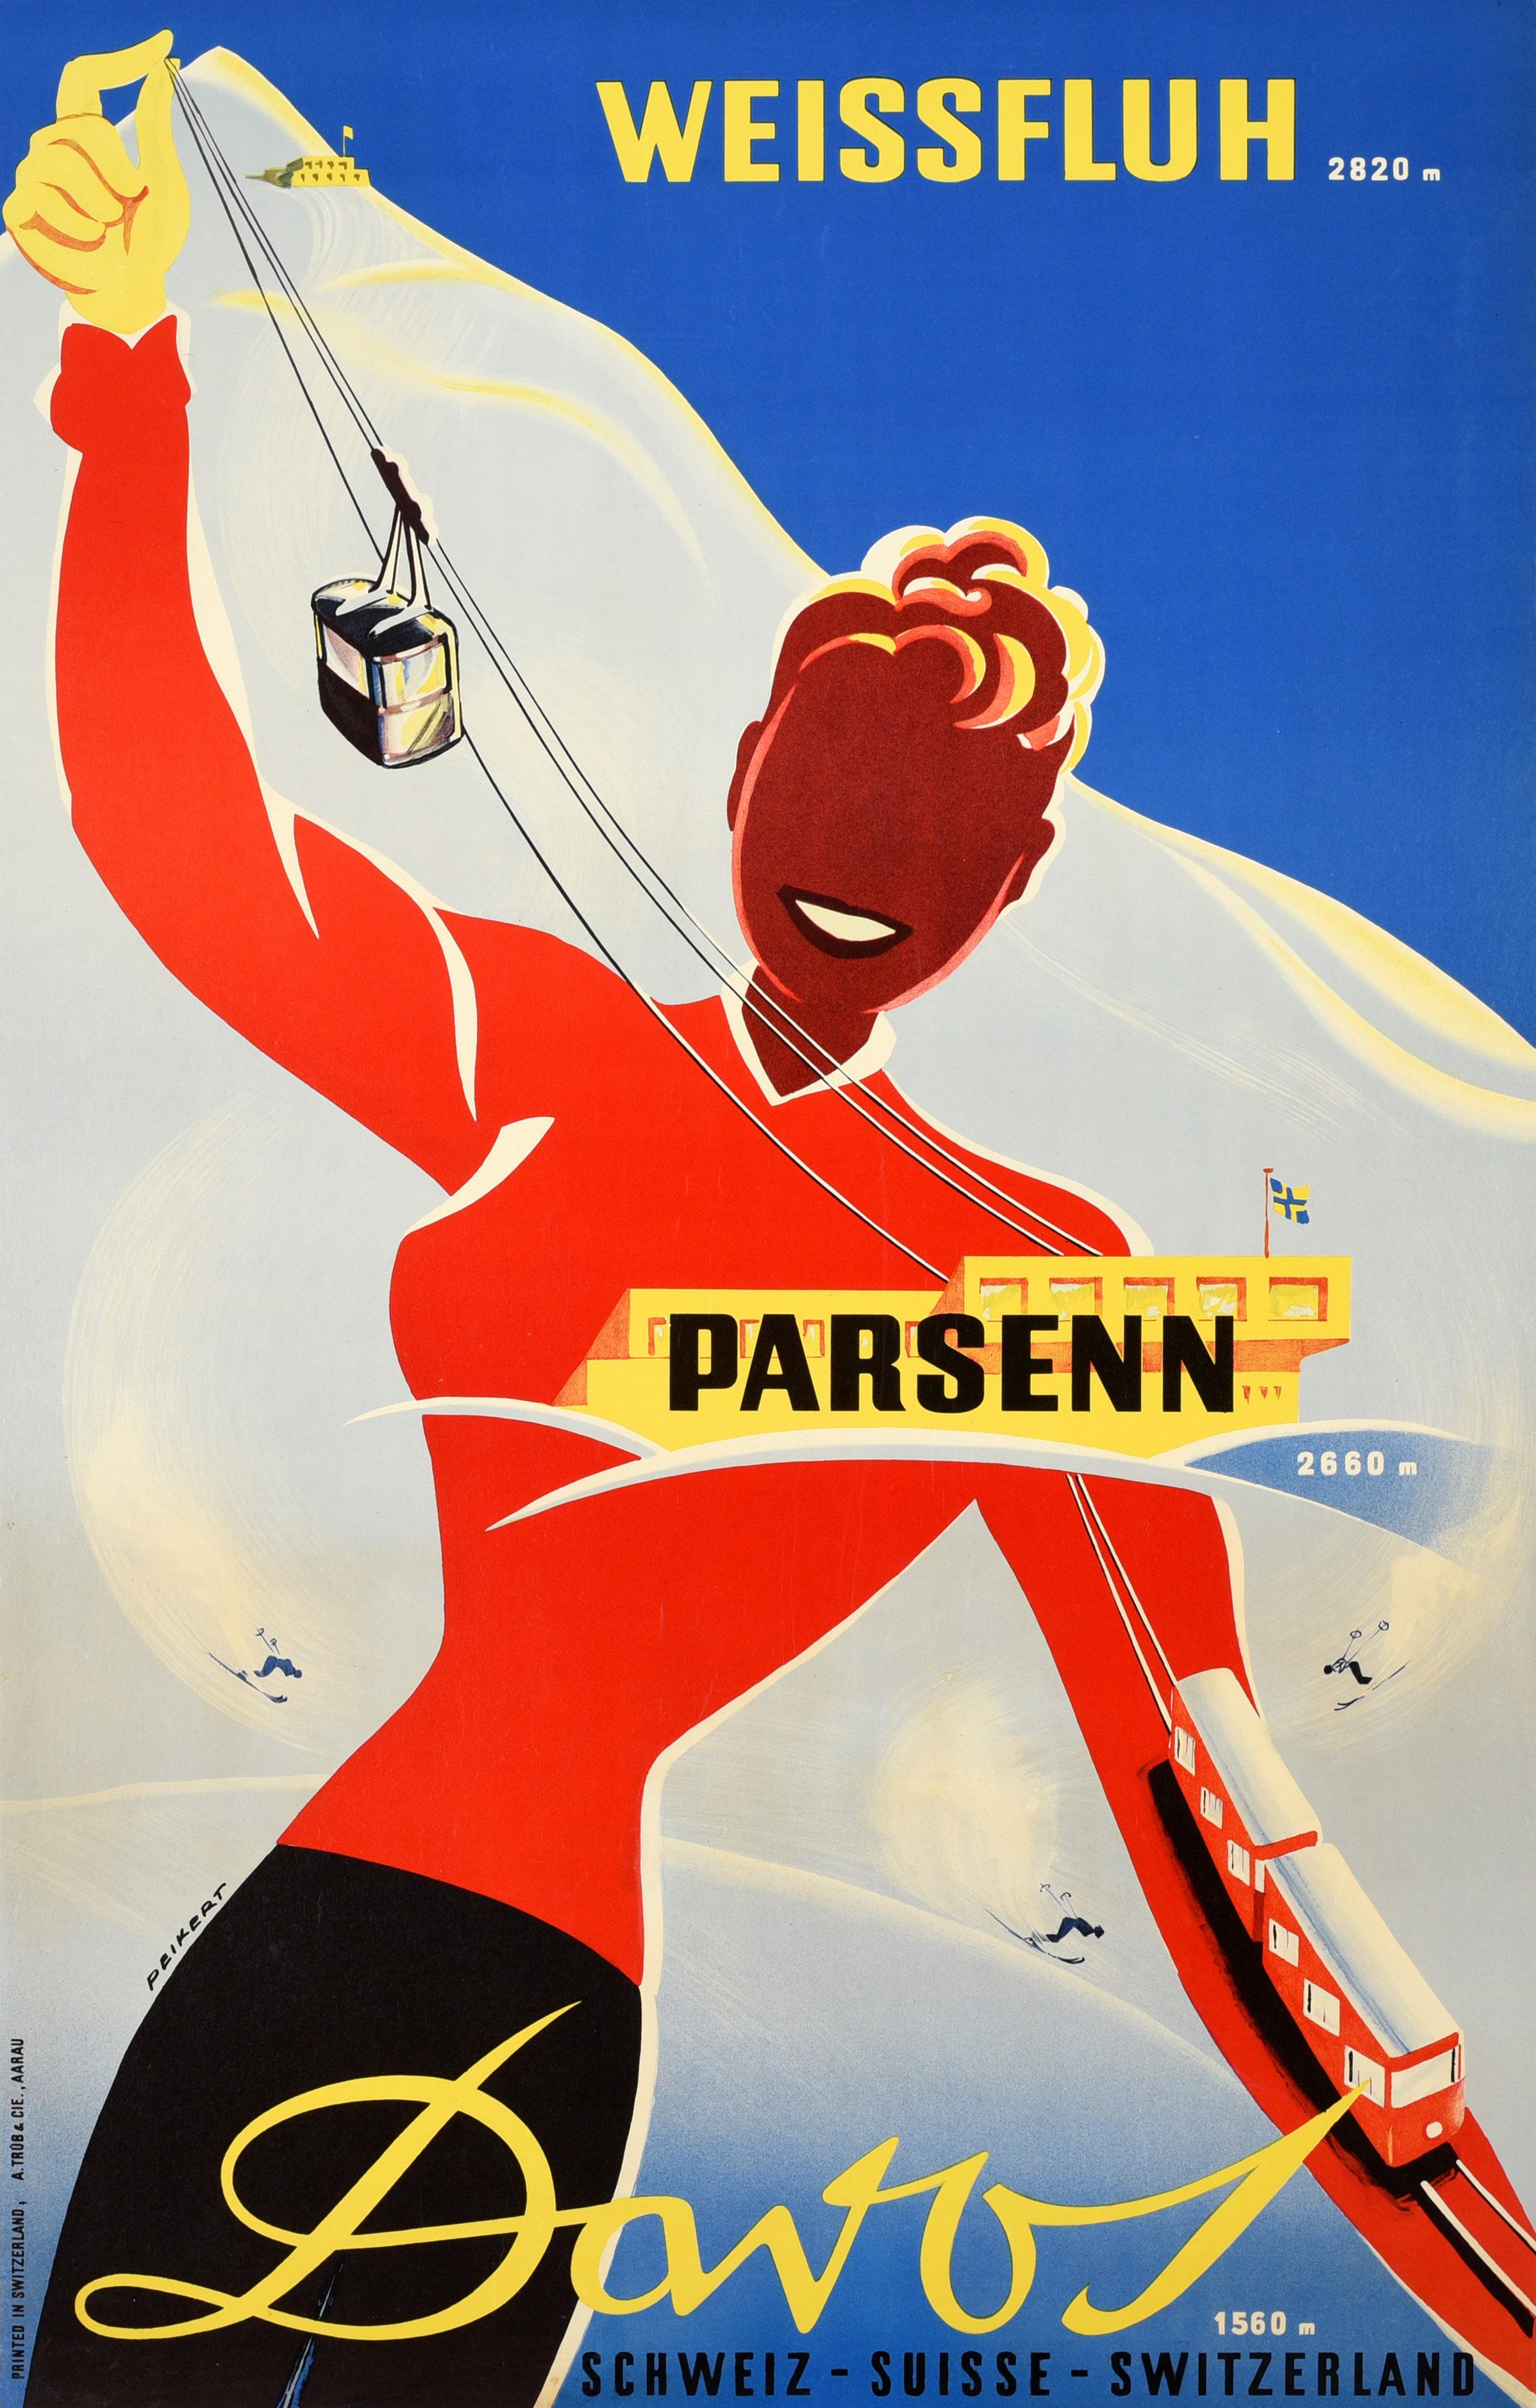 Martin Peikert Print - Original Vintage Poster Weissfluh Parsenn Davos Switzerland Skiing Winter Sport